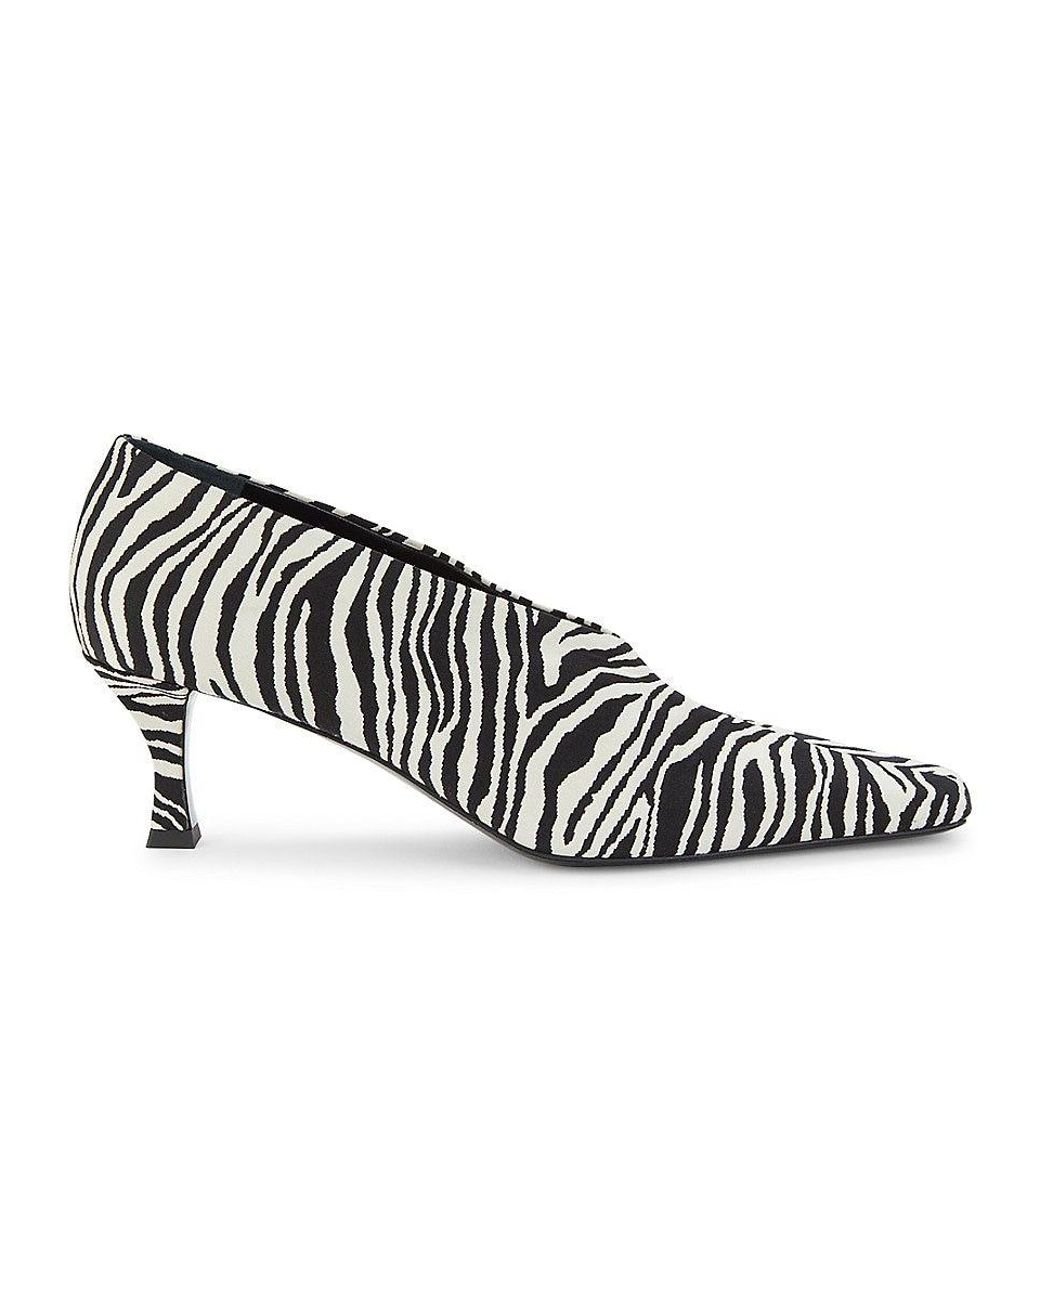 KAREN MILLEN Zebra Print Heels in Zebra Print | Endource